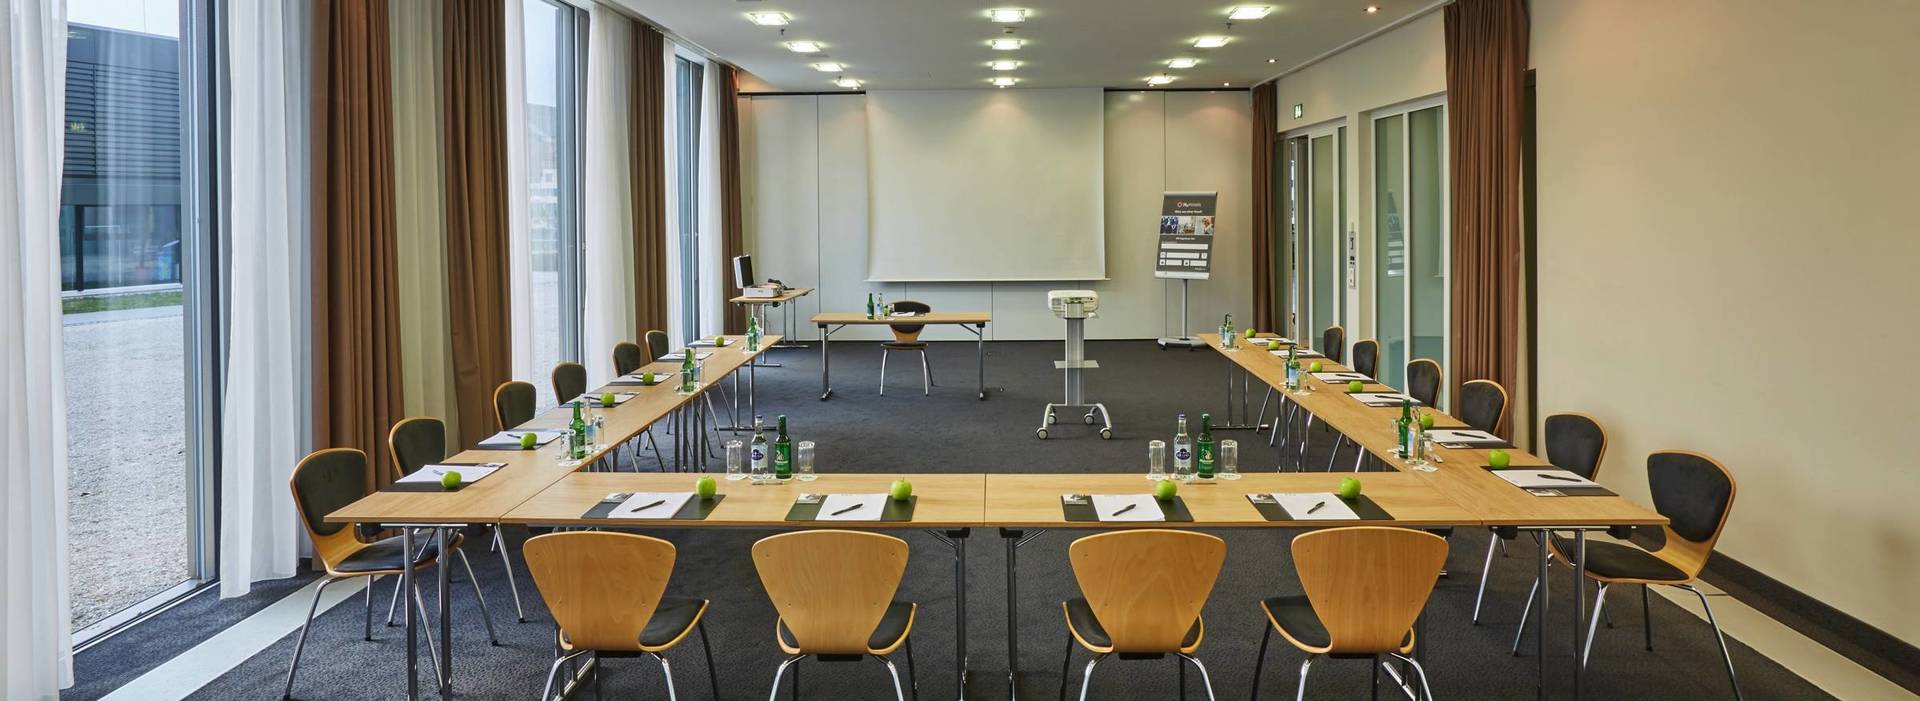 Des salles de conférences modernes pouvant accueillir jusqu'à 200 personnes H4 Hotel Solothurn